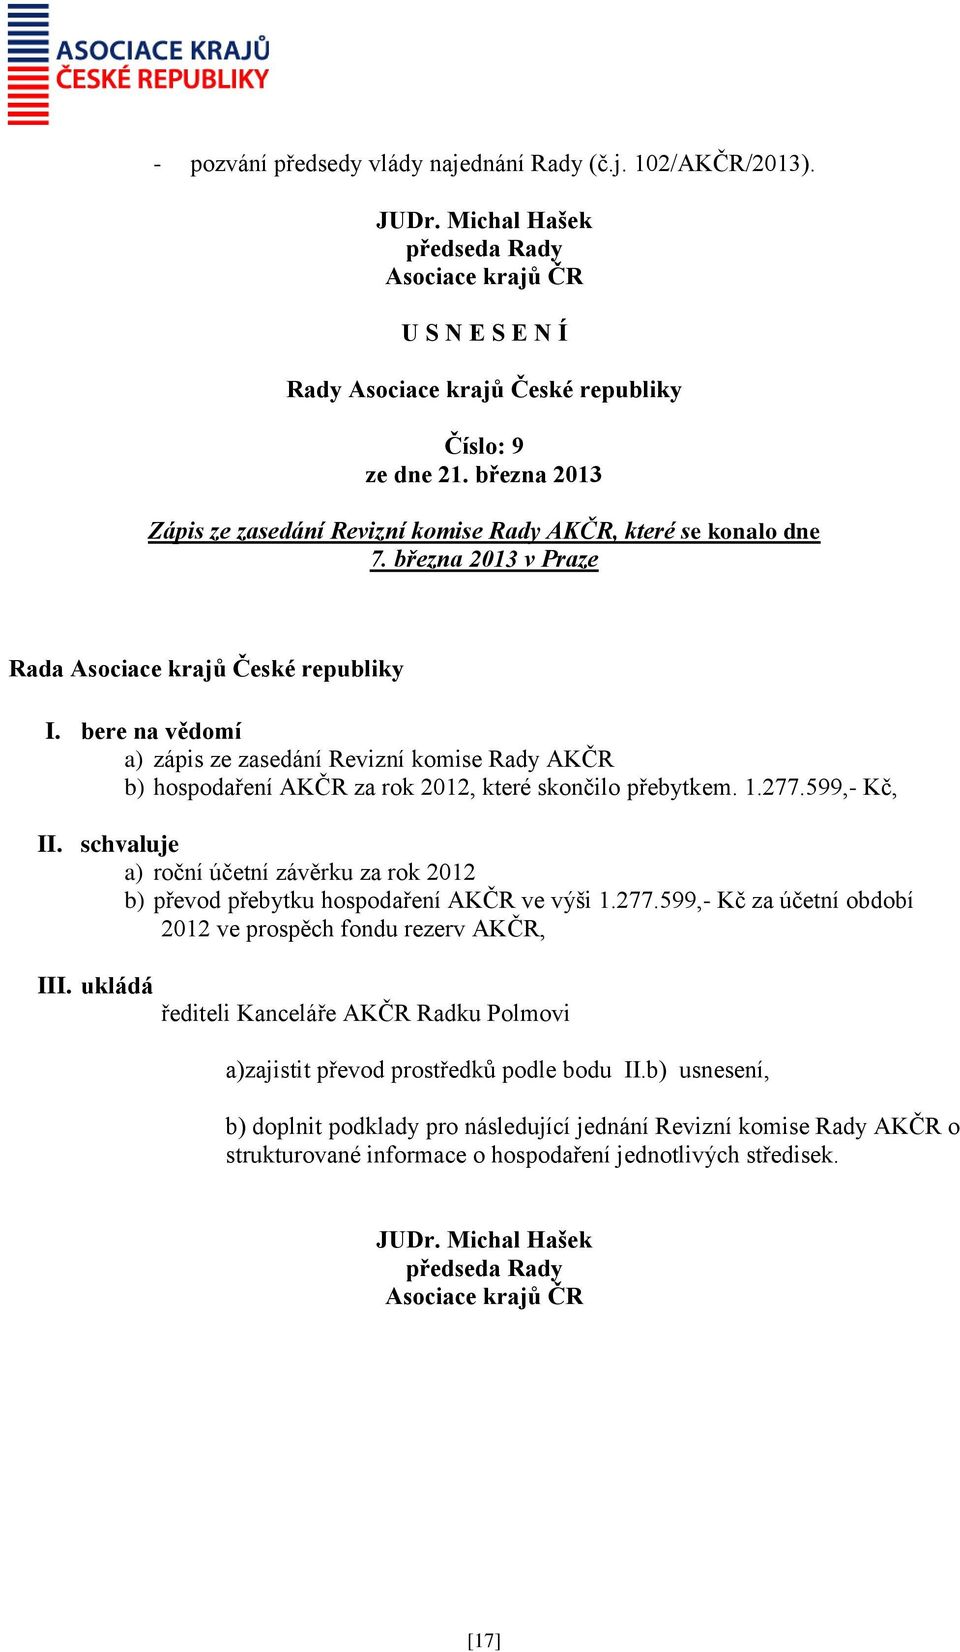 schvaluje a) roční účetní závěrku za rok 2012 b) převod přebytku hospodaření AKČR ve výši 1.277.599,- Kč za účetní období 2012 ve prospěch fondu rezerv AKČR, III.